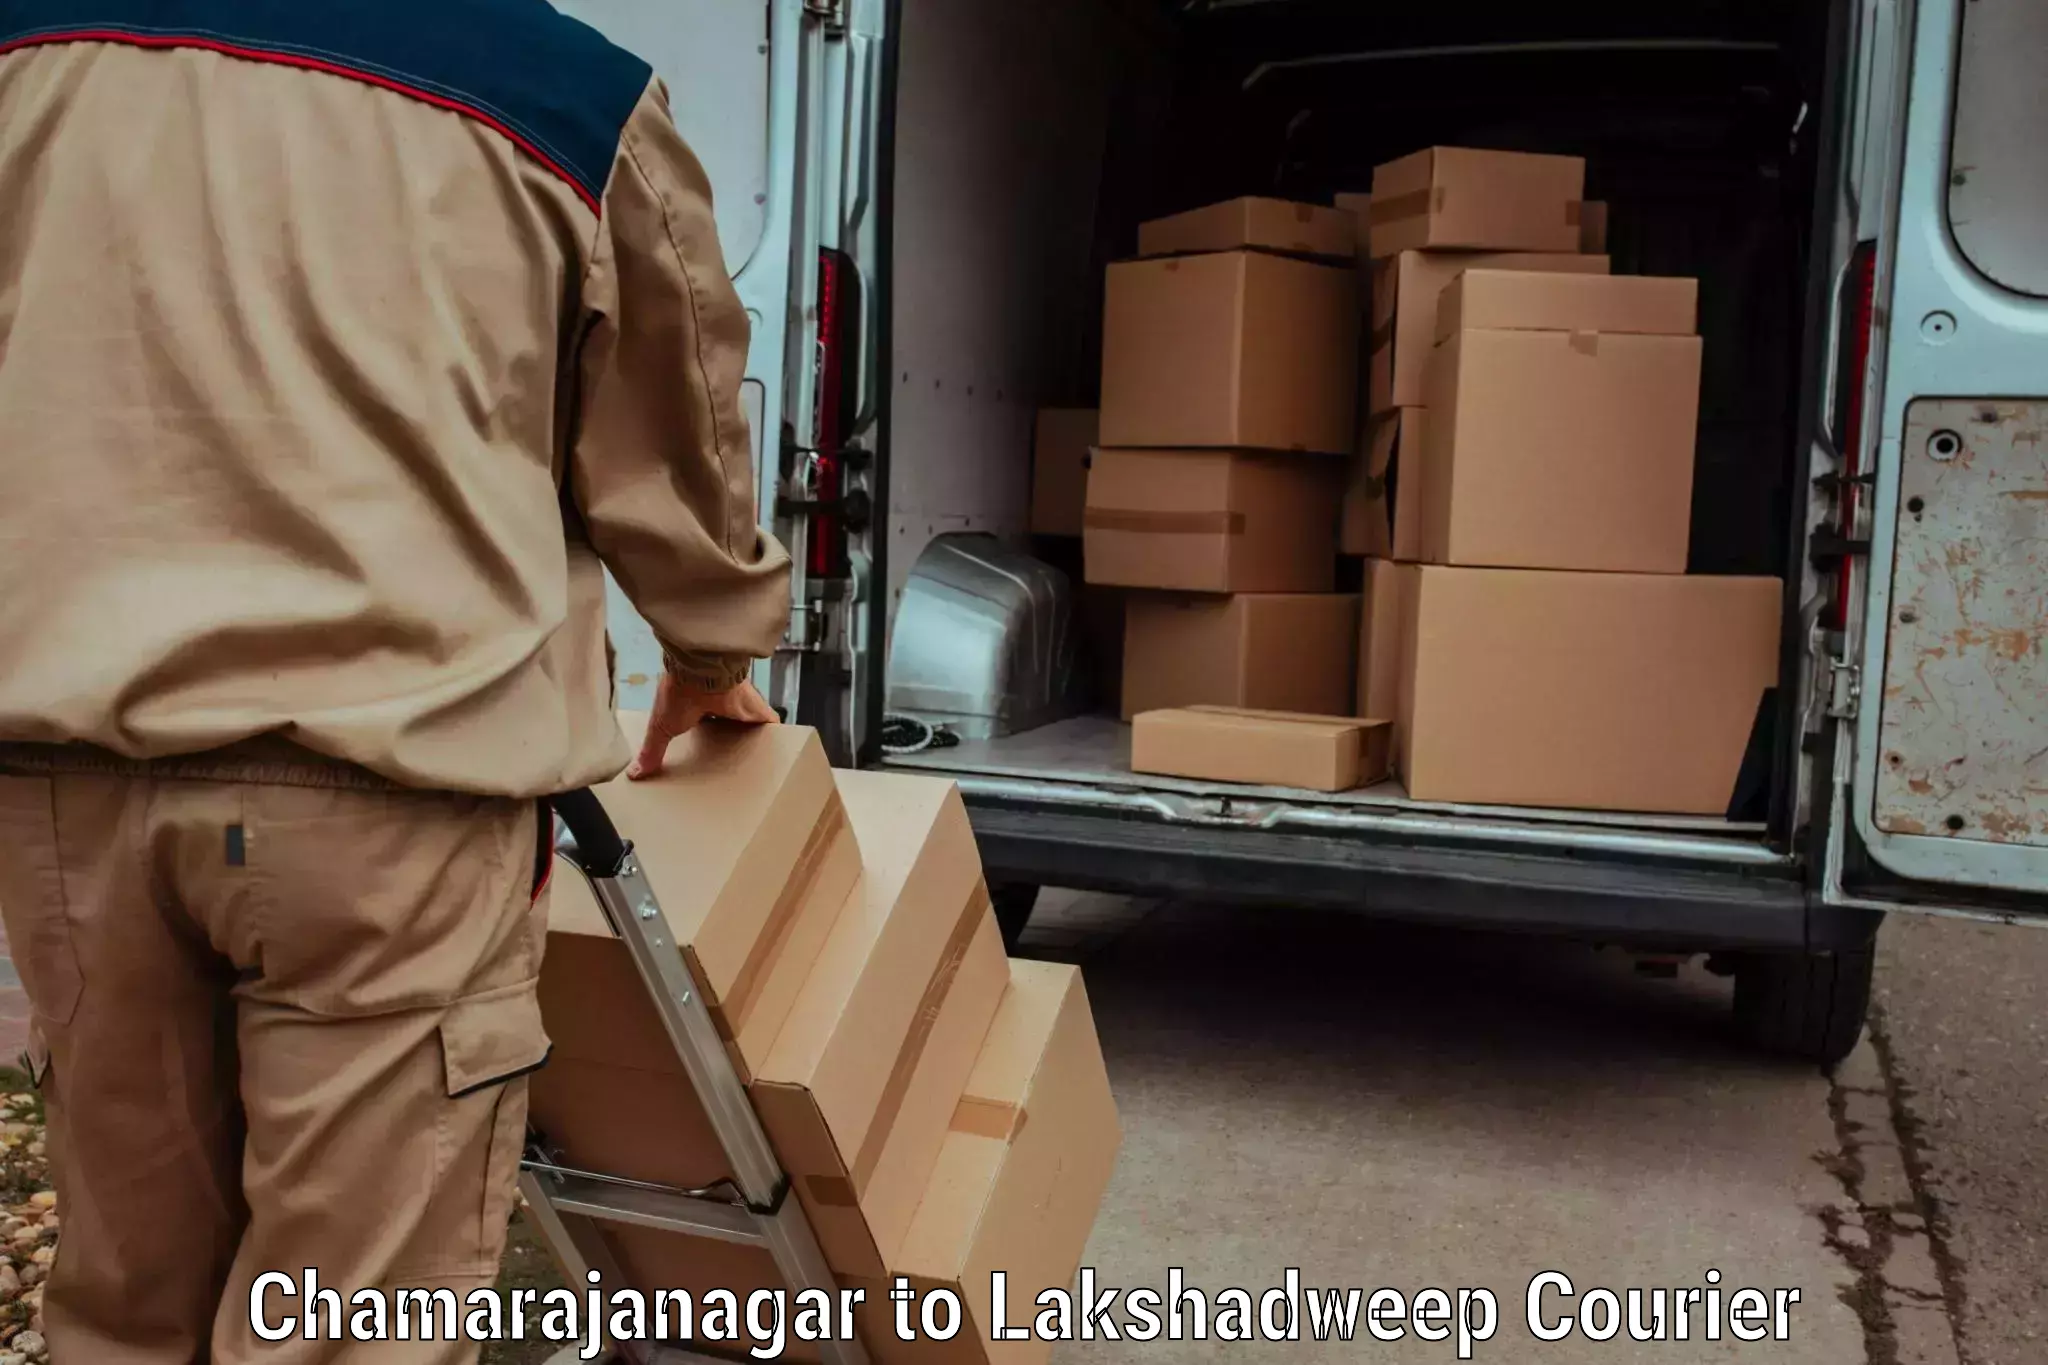 Comprehensive shipping network Chamarajanagar to Lakshadweep